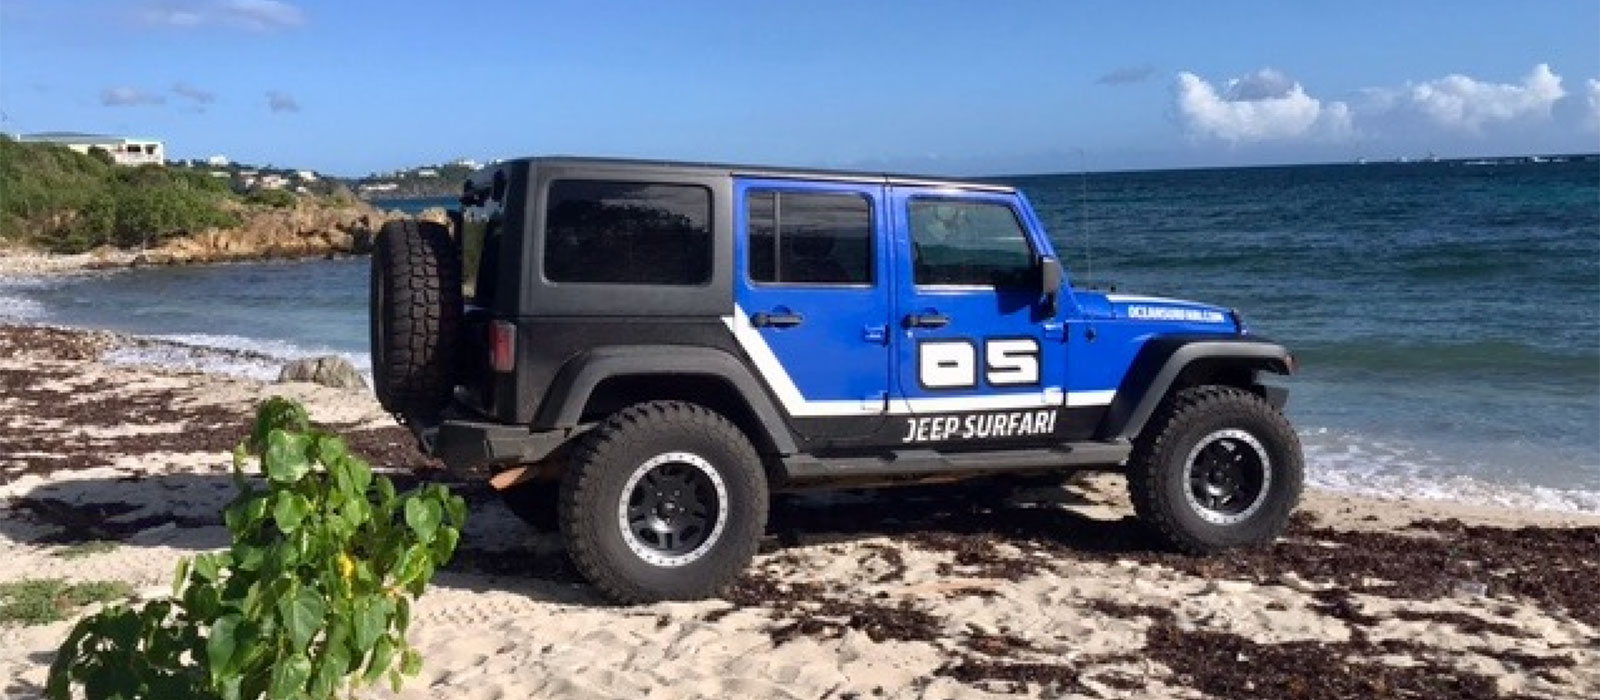 Jeep-Surfari